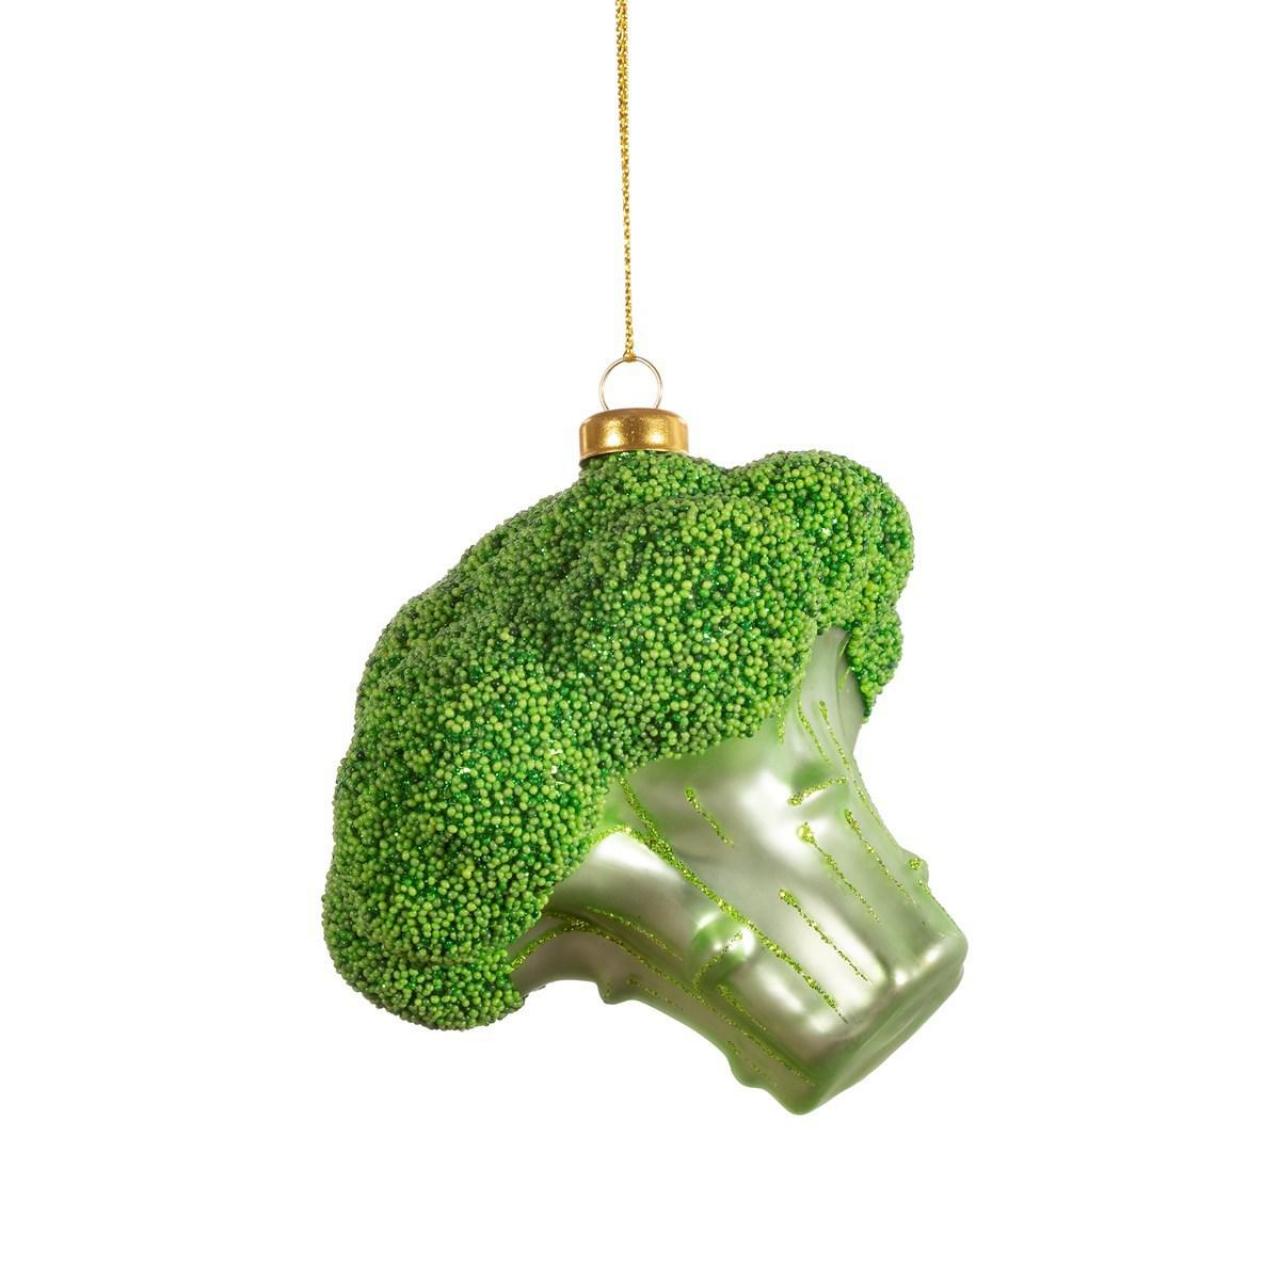 Een superfood broccoli in de boom? Bij Sass & Belle vind je de meest originele kersthangers. Ideaal om in fonkelend groen ook de kleinsten onder ons te inspireren.Broccoli Sass & Belle - 11,49 euro - www.sassandbelle.co.uk